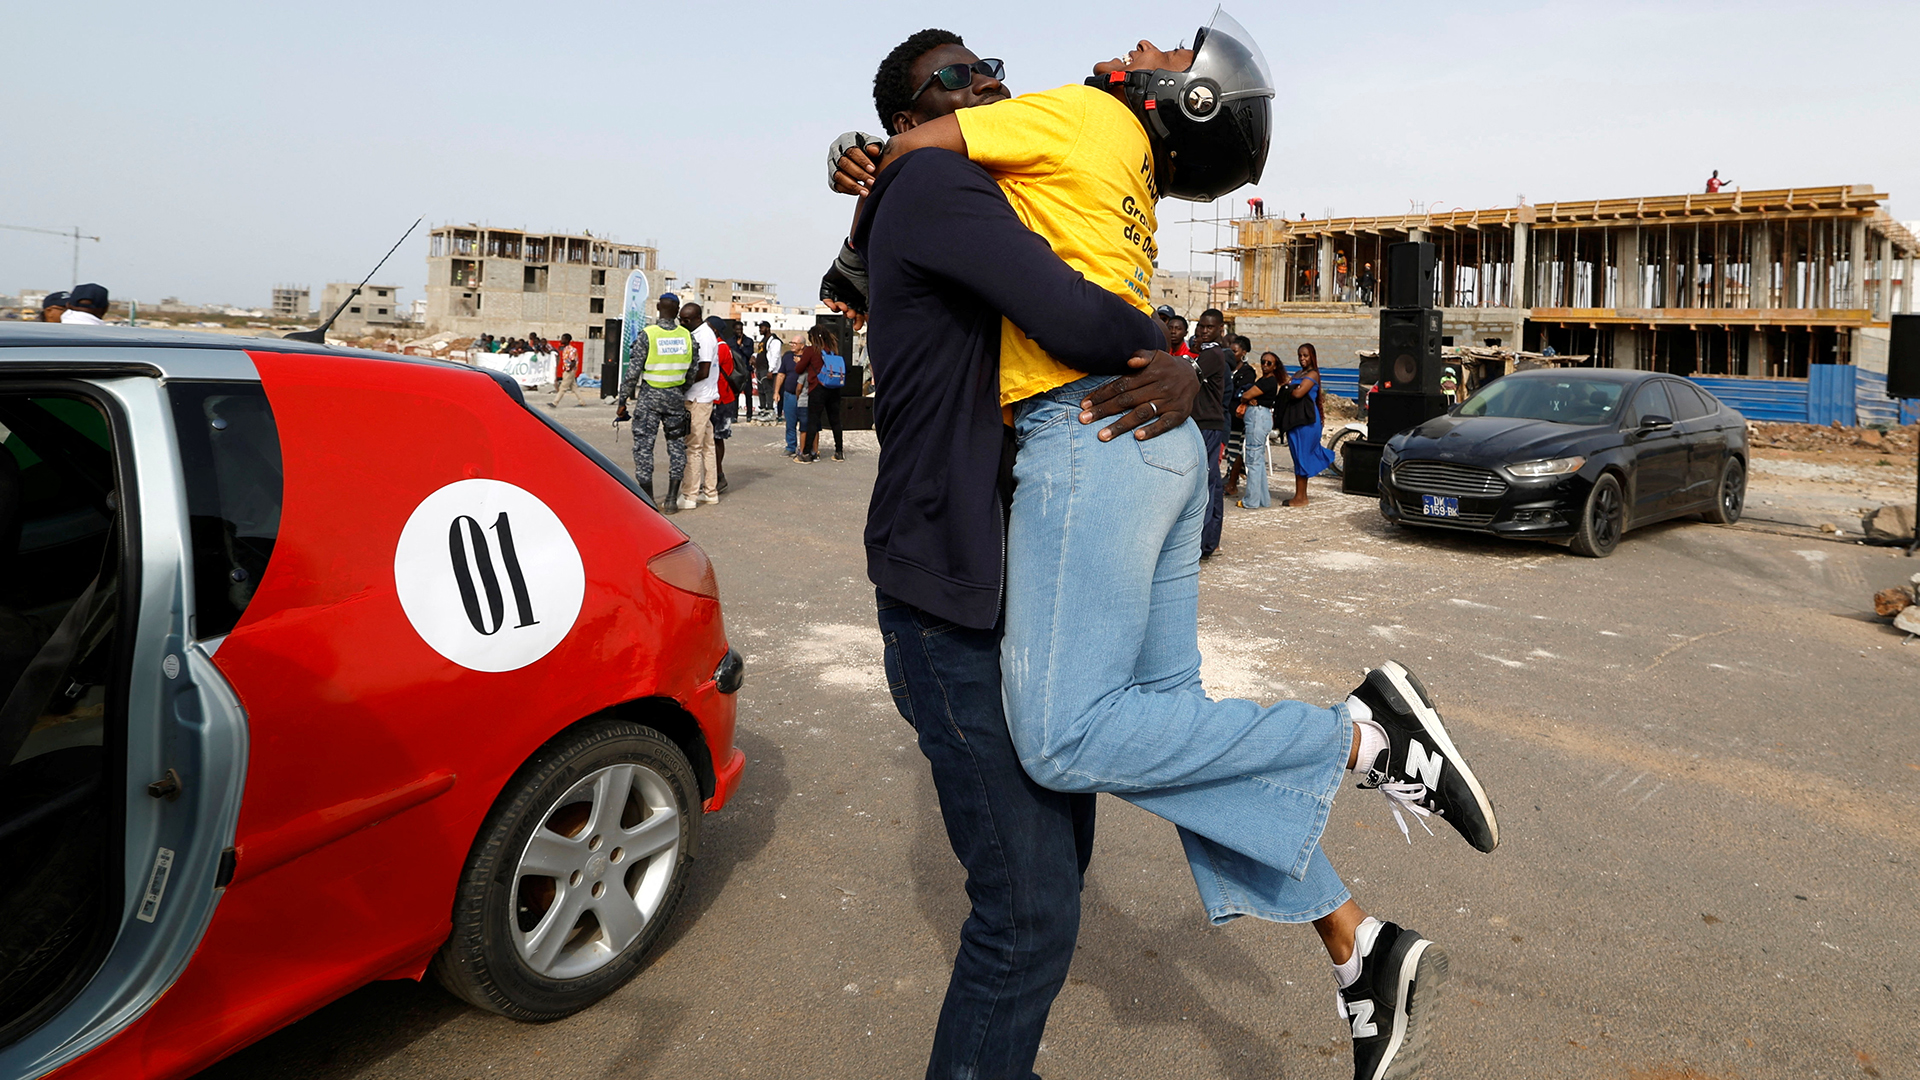 Fatumata Bah feiert ihren Sieg während des ersten Grand Prix von Dakar auf der Startbahn des alten Flughafens in Dakar (Senegal). | REUTERS